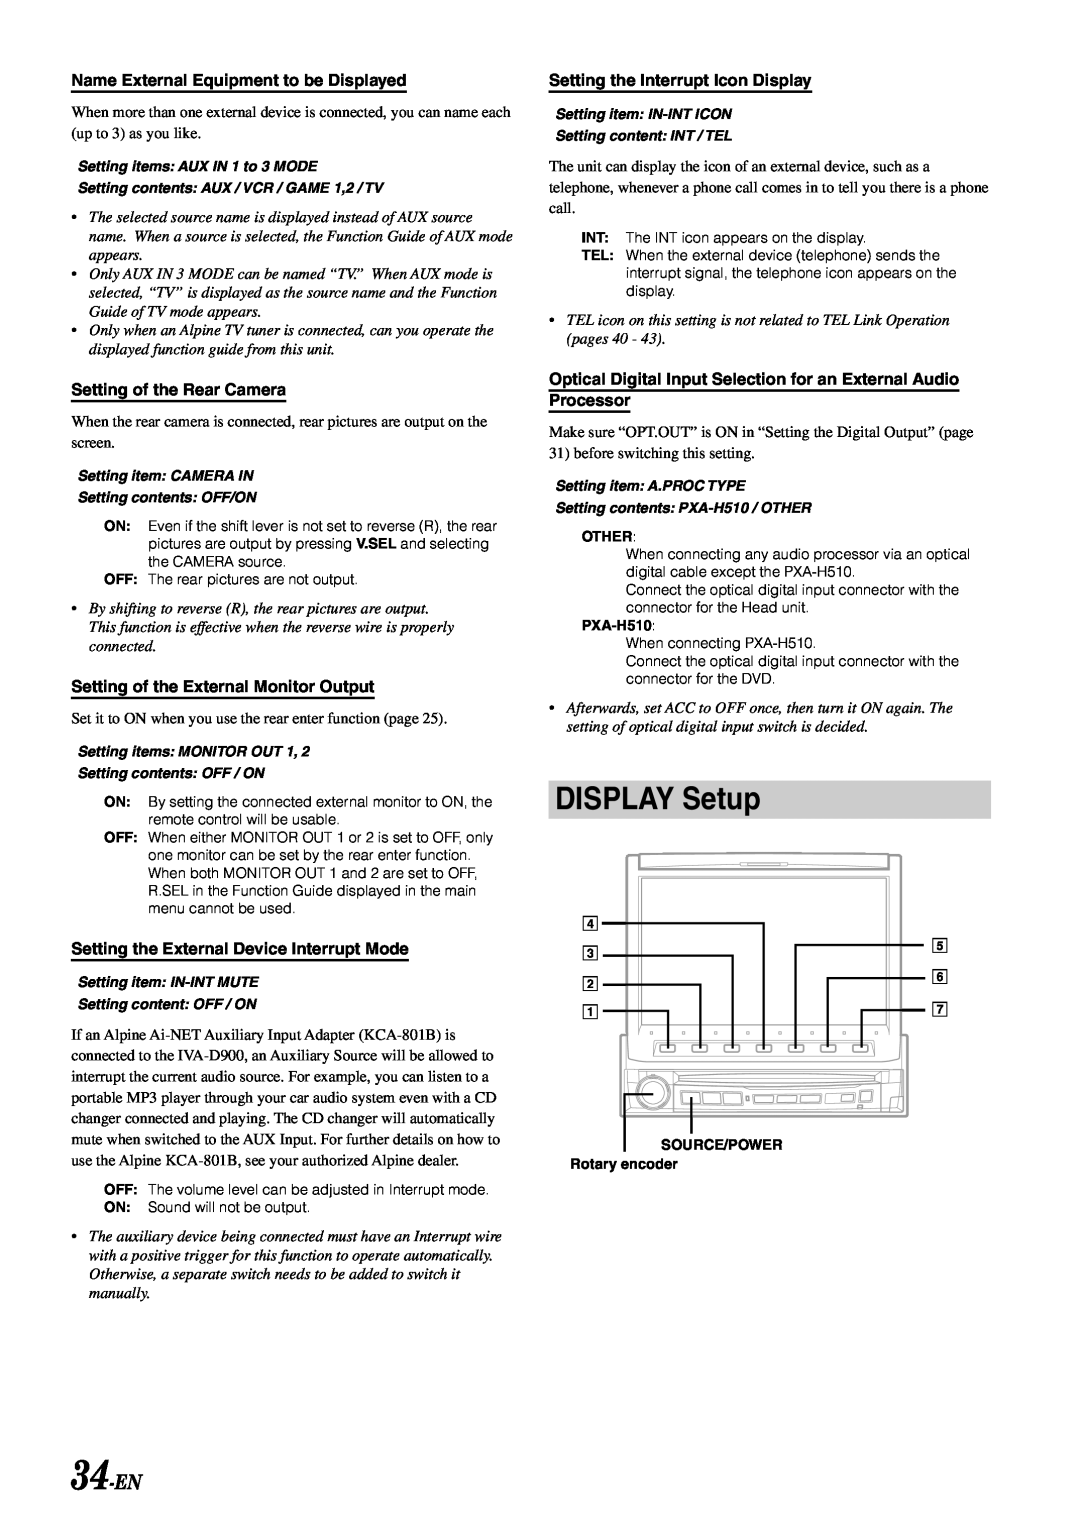 Alpine IVA-D900 owner manual DISPLAY Setup, 34-EN 